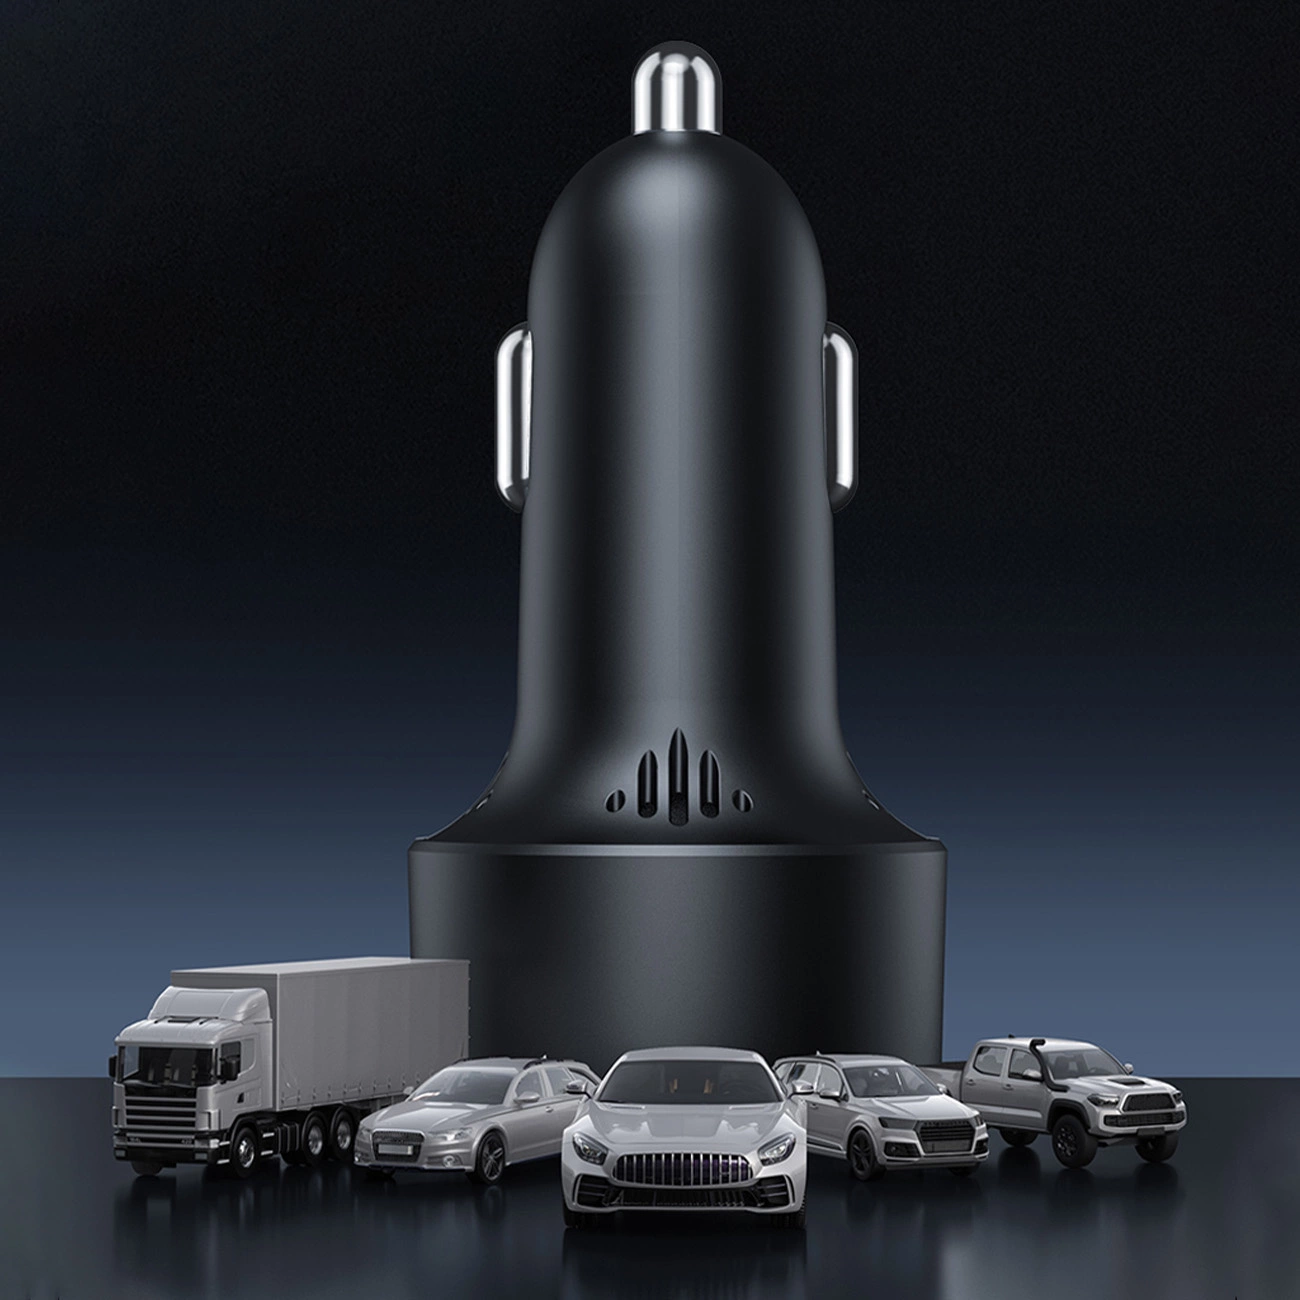 Modelle verschiedener Autos vor dem Hintergrund des Baseus High Efficiency Pro-Adapters